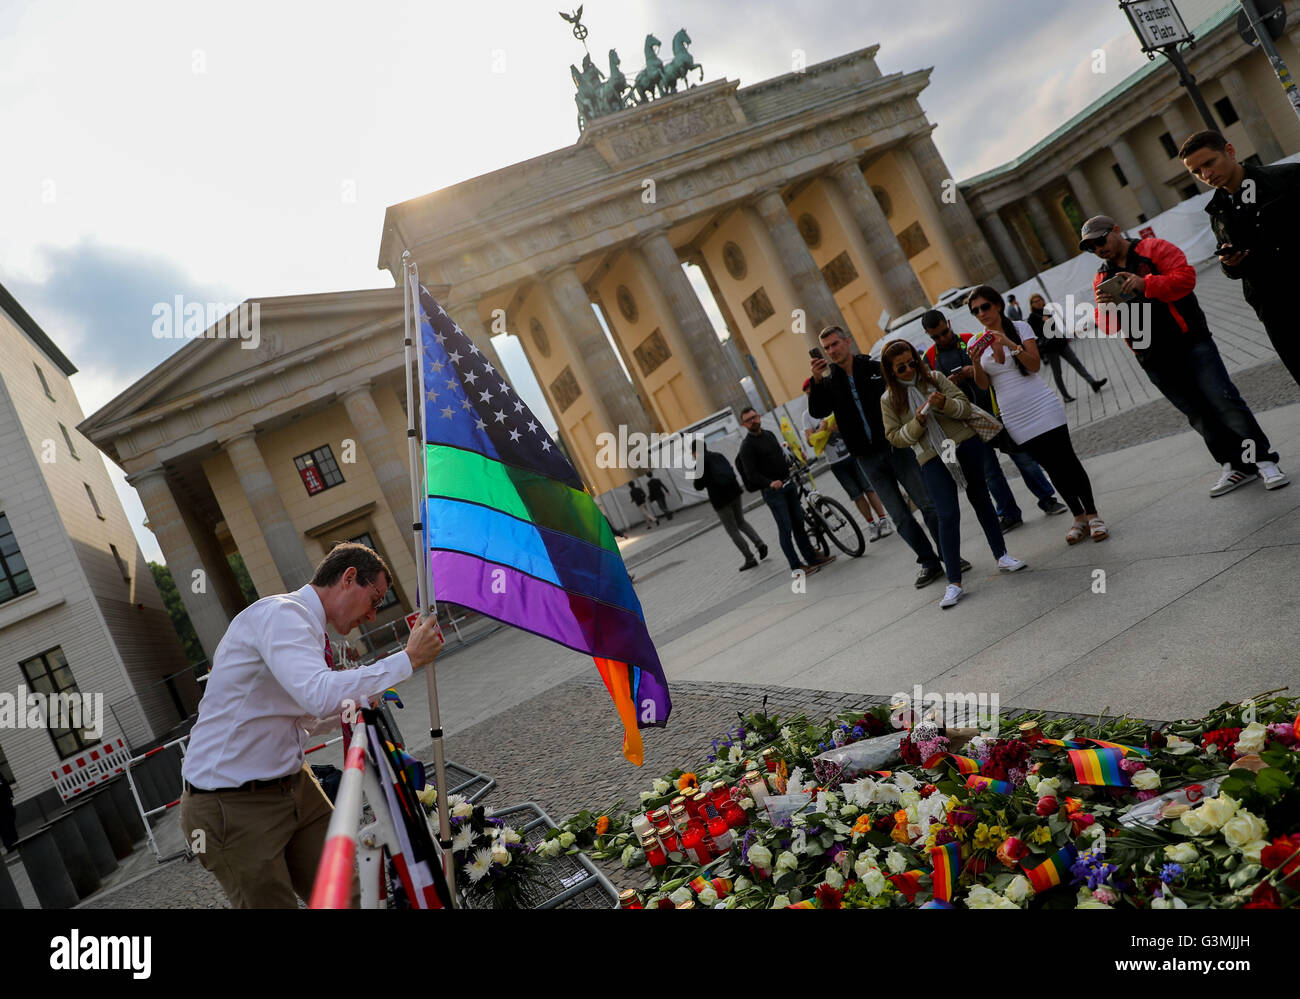 Berlino, Germania. Xiii Giugno, 2016. Un uomo imposta una bandiera arcobaleno di fronte all'ambasciata americana situata accanto alla Porta di Brandeburgo in memoria delle vittime dell'Orlando riprese di massa, a Berlino, Germania, 13 giugno 2016. Foto: KAY NIETFELD/dpa/Alamy Live News Foto Stock